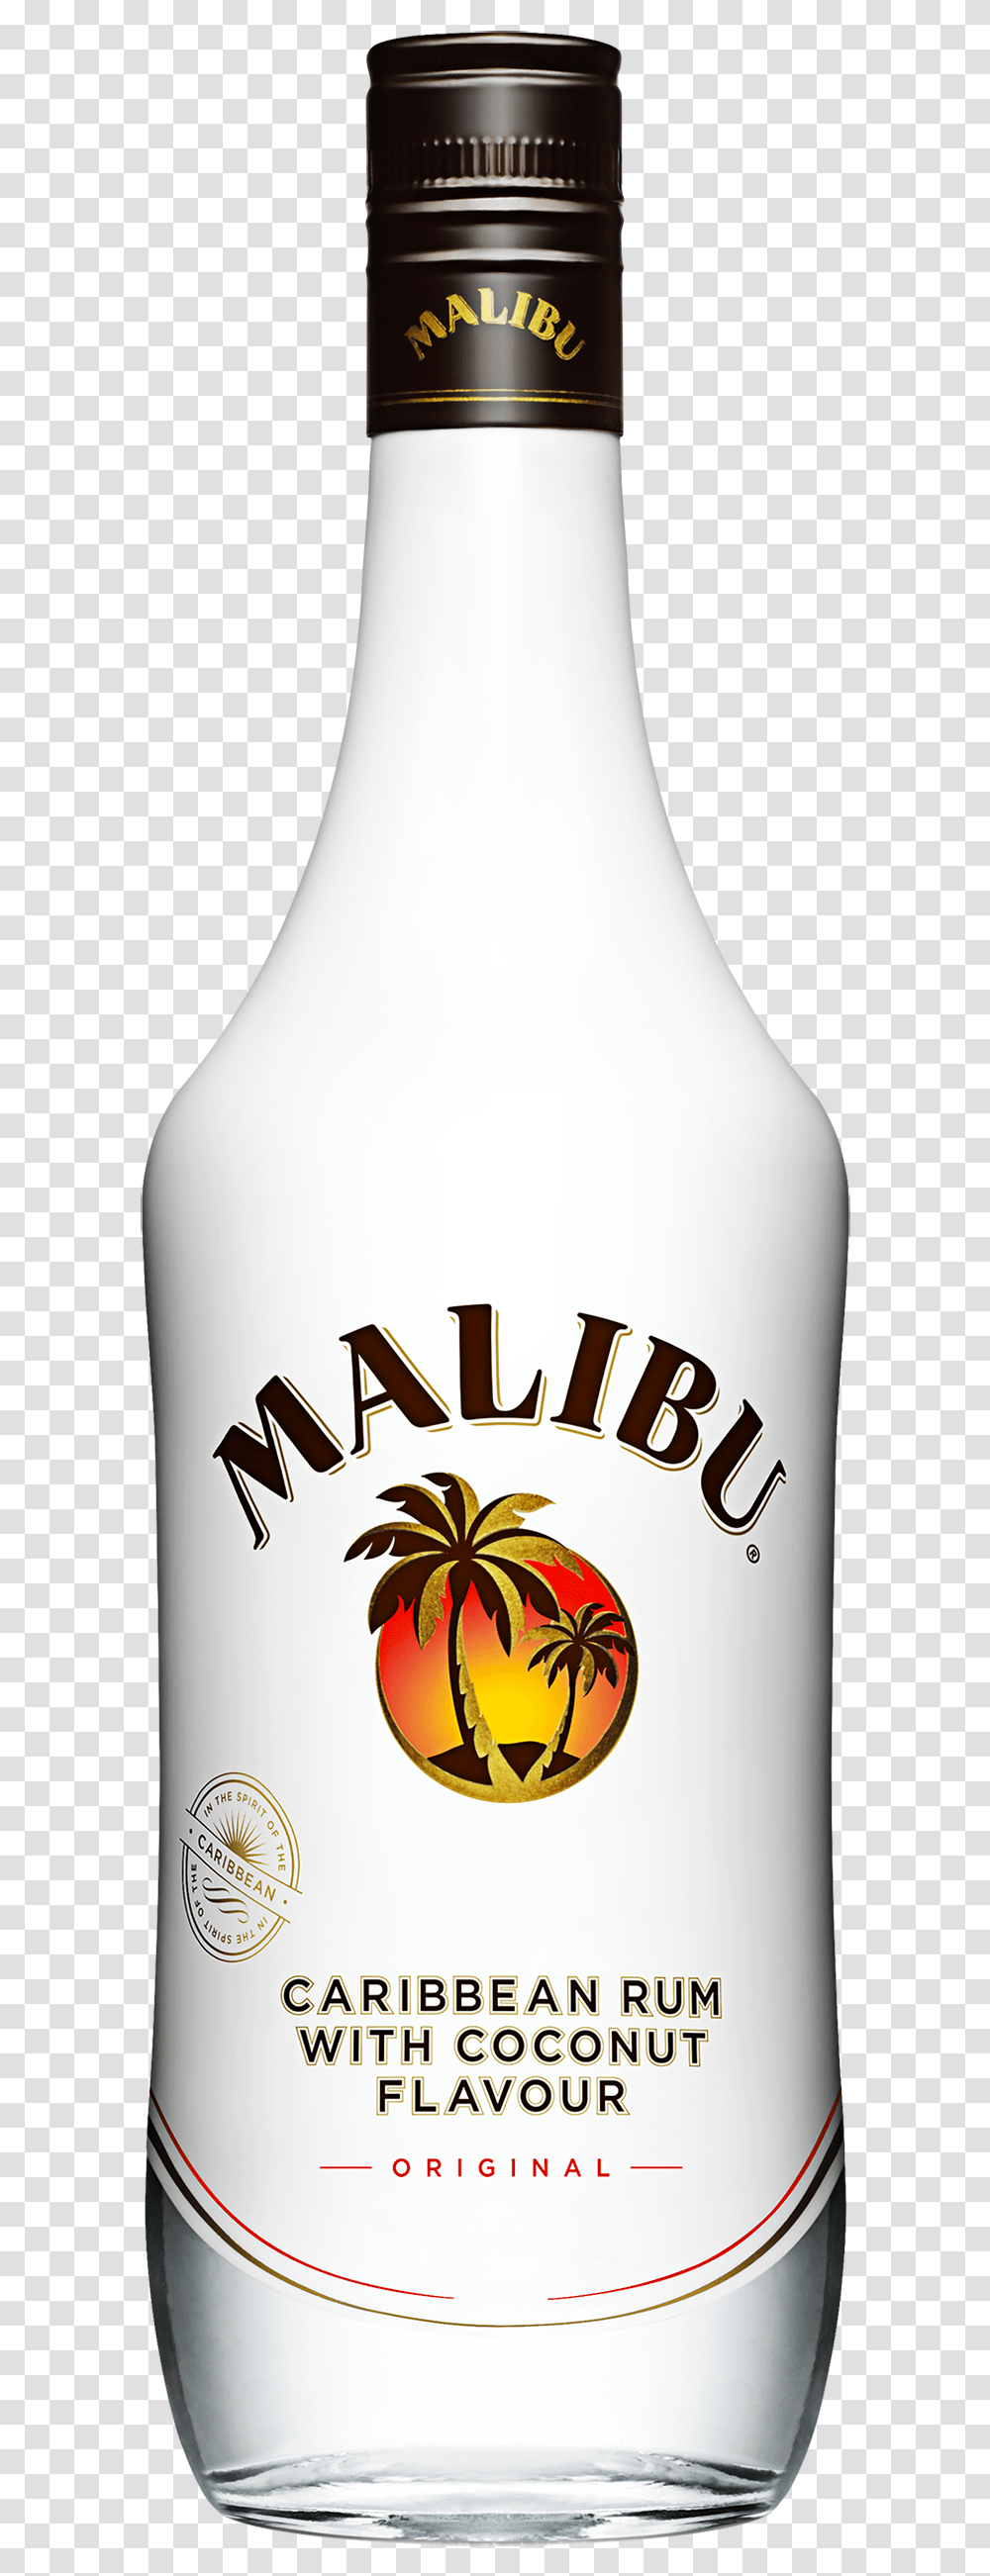 Malibu Bottle Background, Liquor, Alcohol, Beverage, Drink Transparent Png